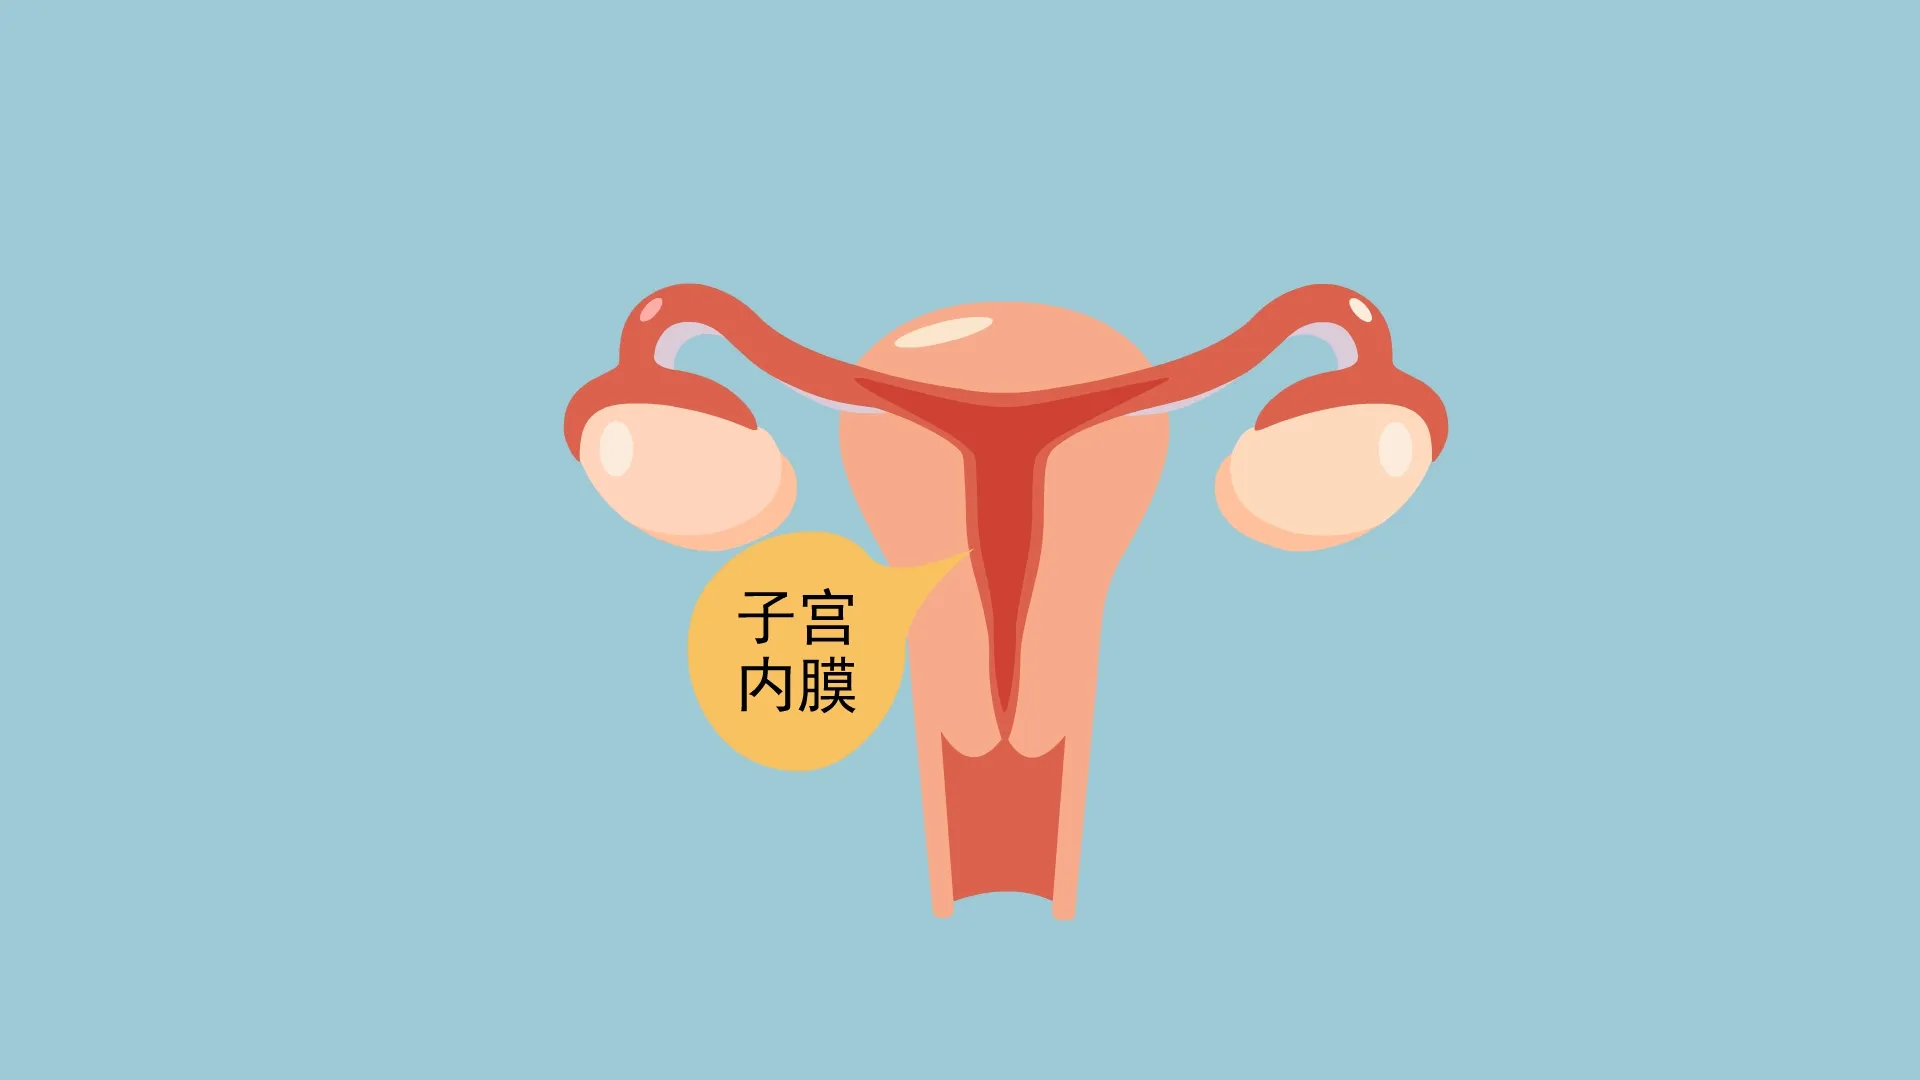 雌孕激素水平的增高会导致子宫内膜增厚